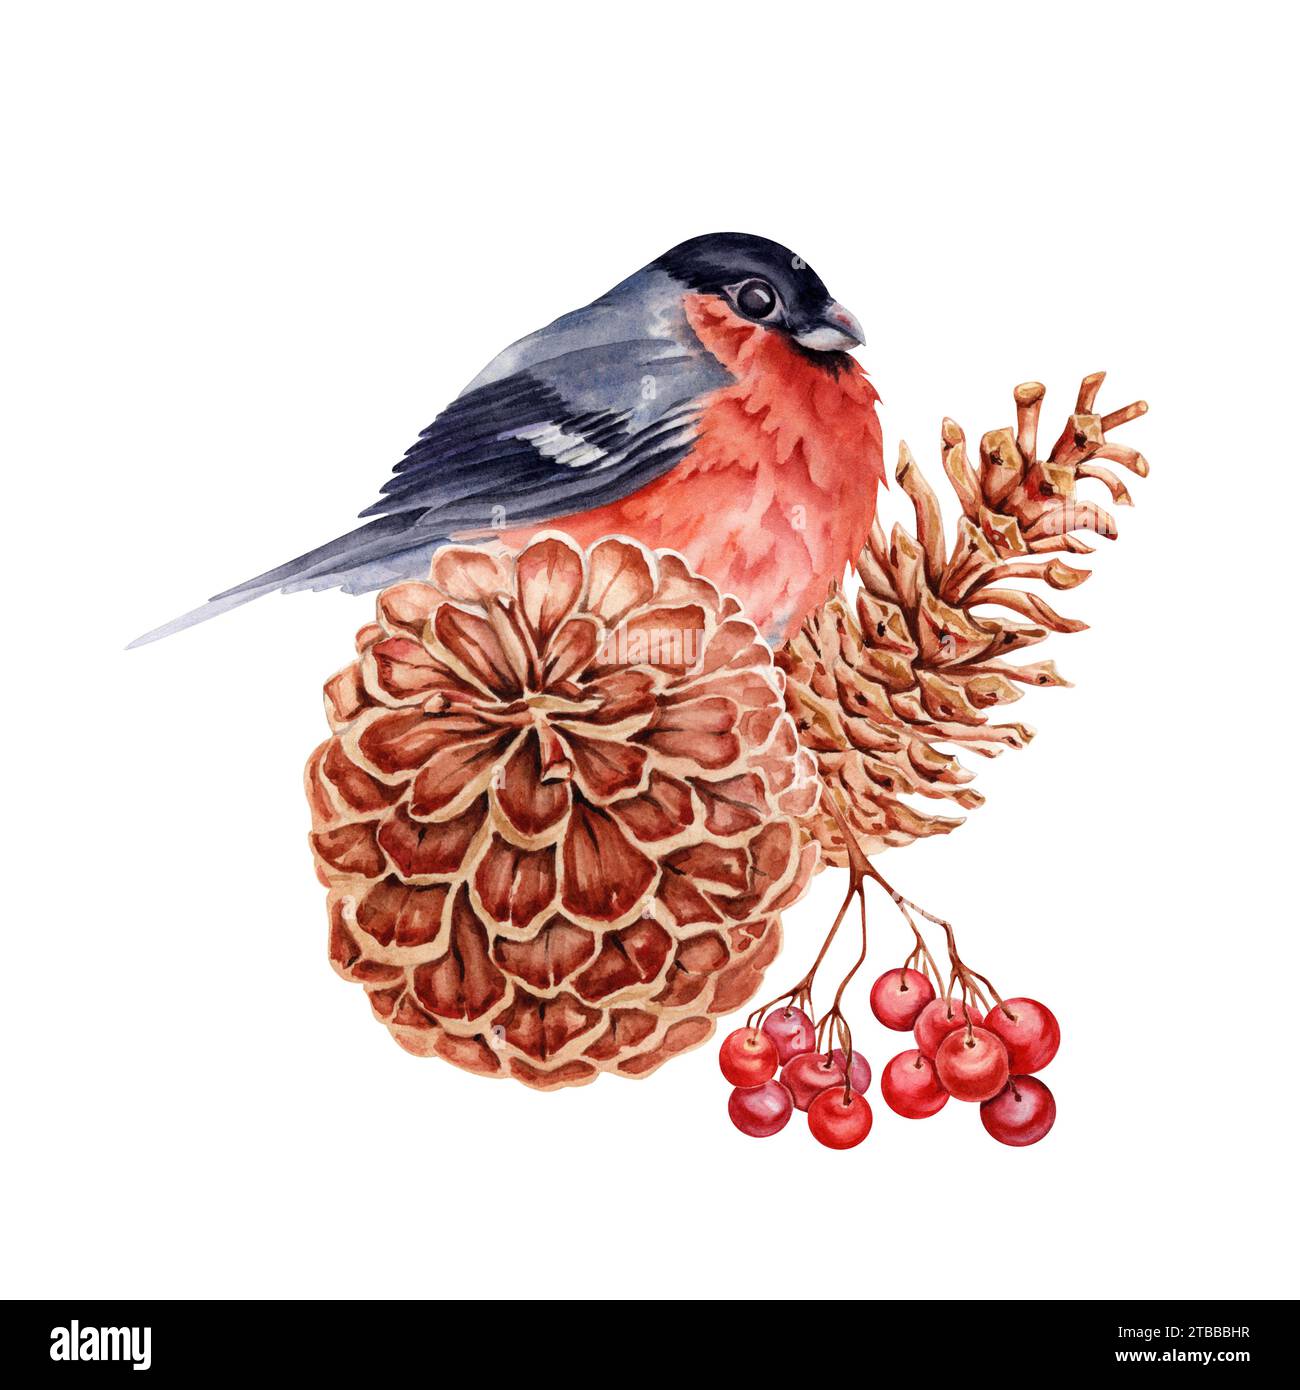 Composizione natalizia con uccellino rosso arroccato su coni di pino con un ramo di bacche di rowan. Illustrazione acquerello isolata Foto Stock